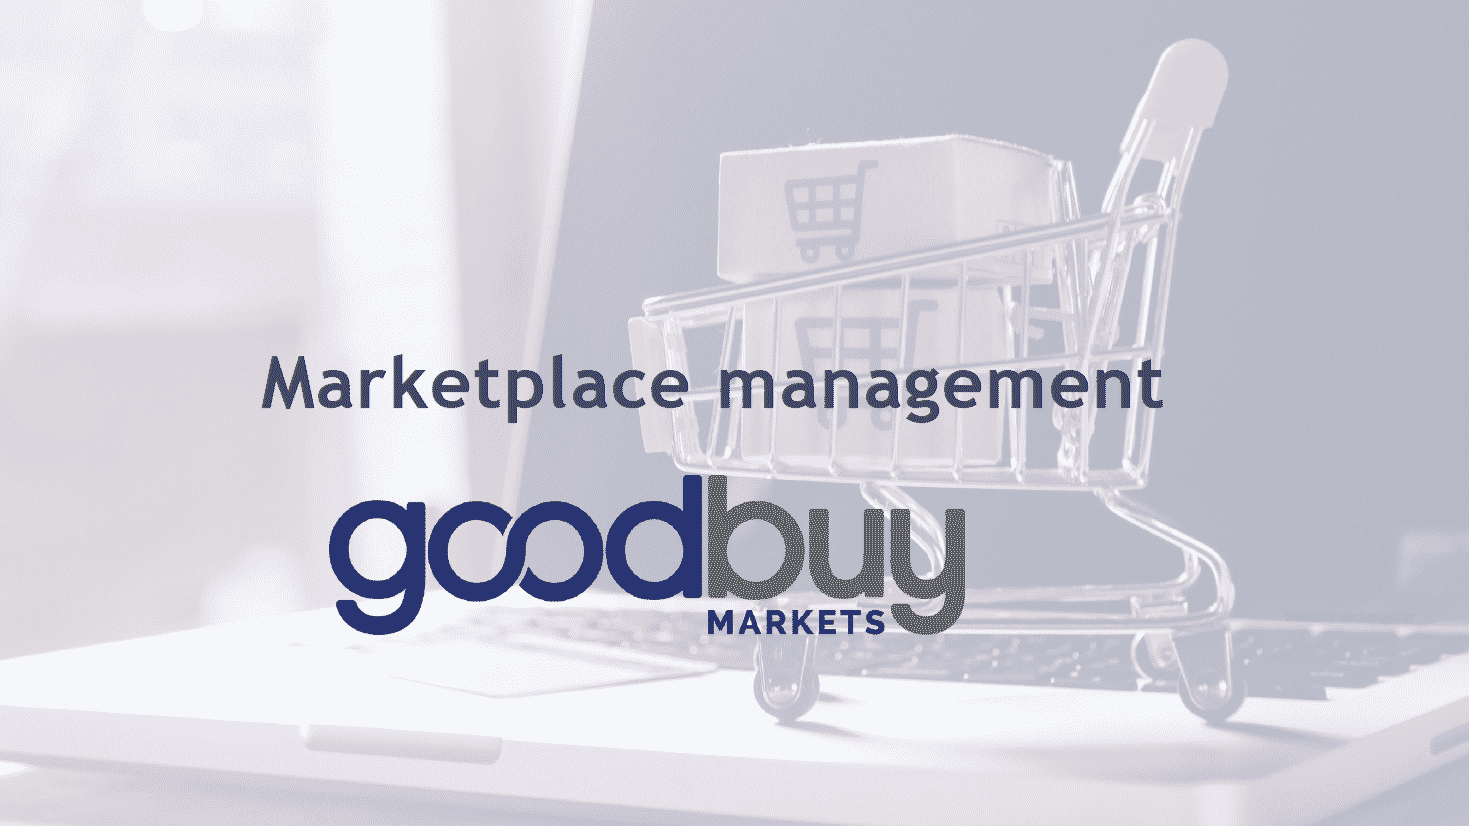 En este momento estás viendo ANEXA Logística establece una colaboración con Goodbuy Markets para ofrecer un servicio de soluciones integrales de gestión de markets place, marketing y logística